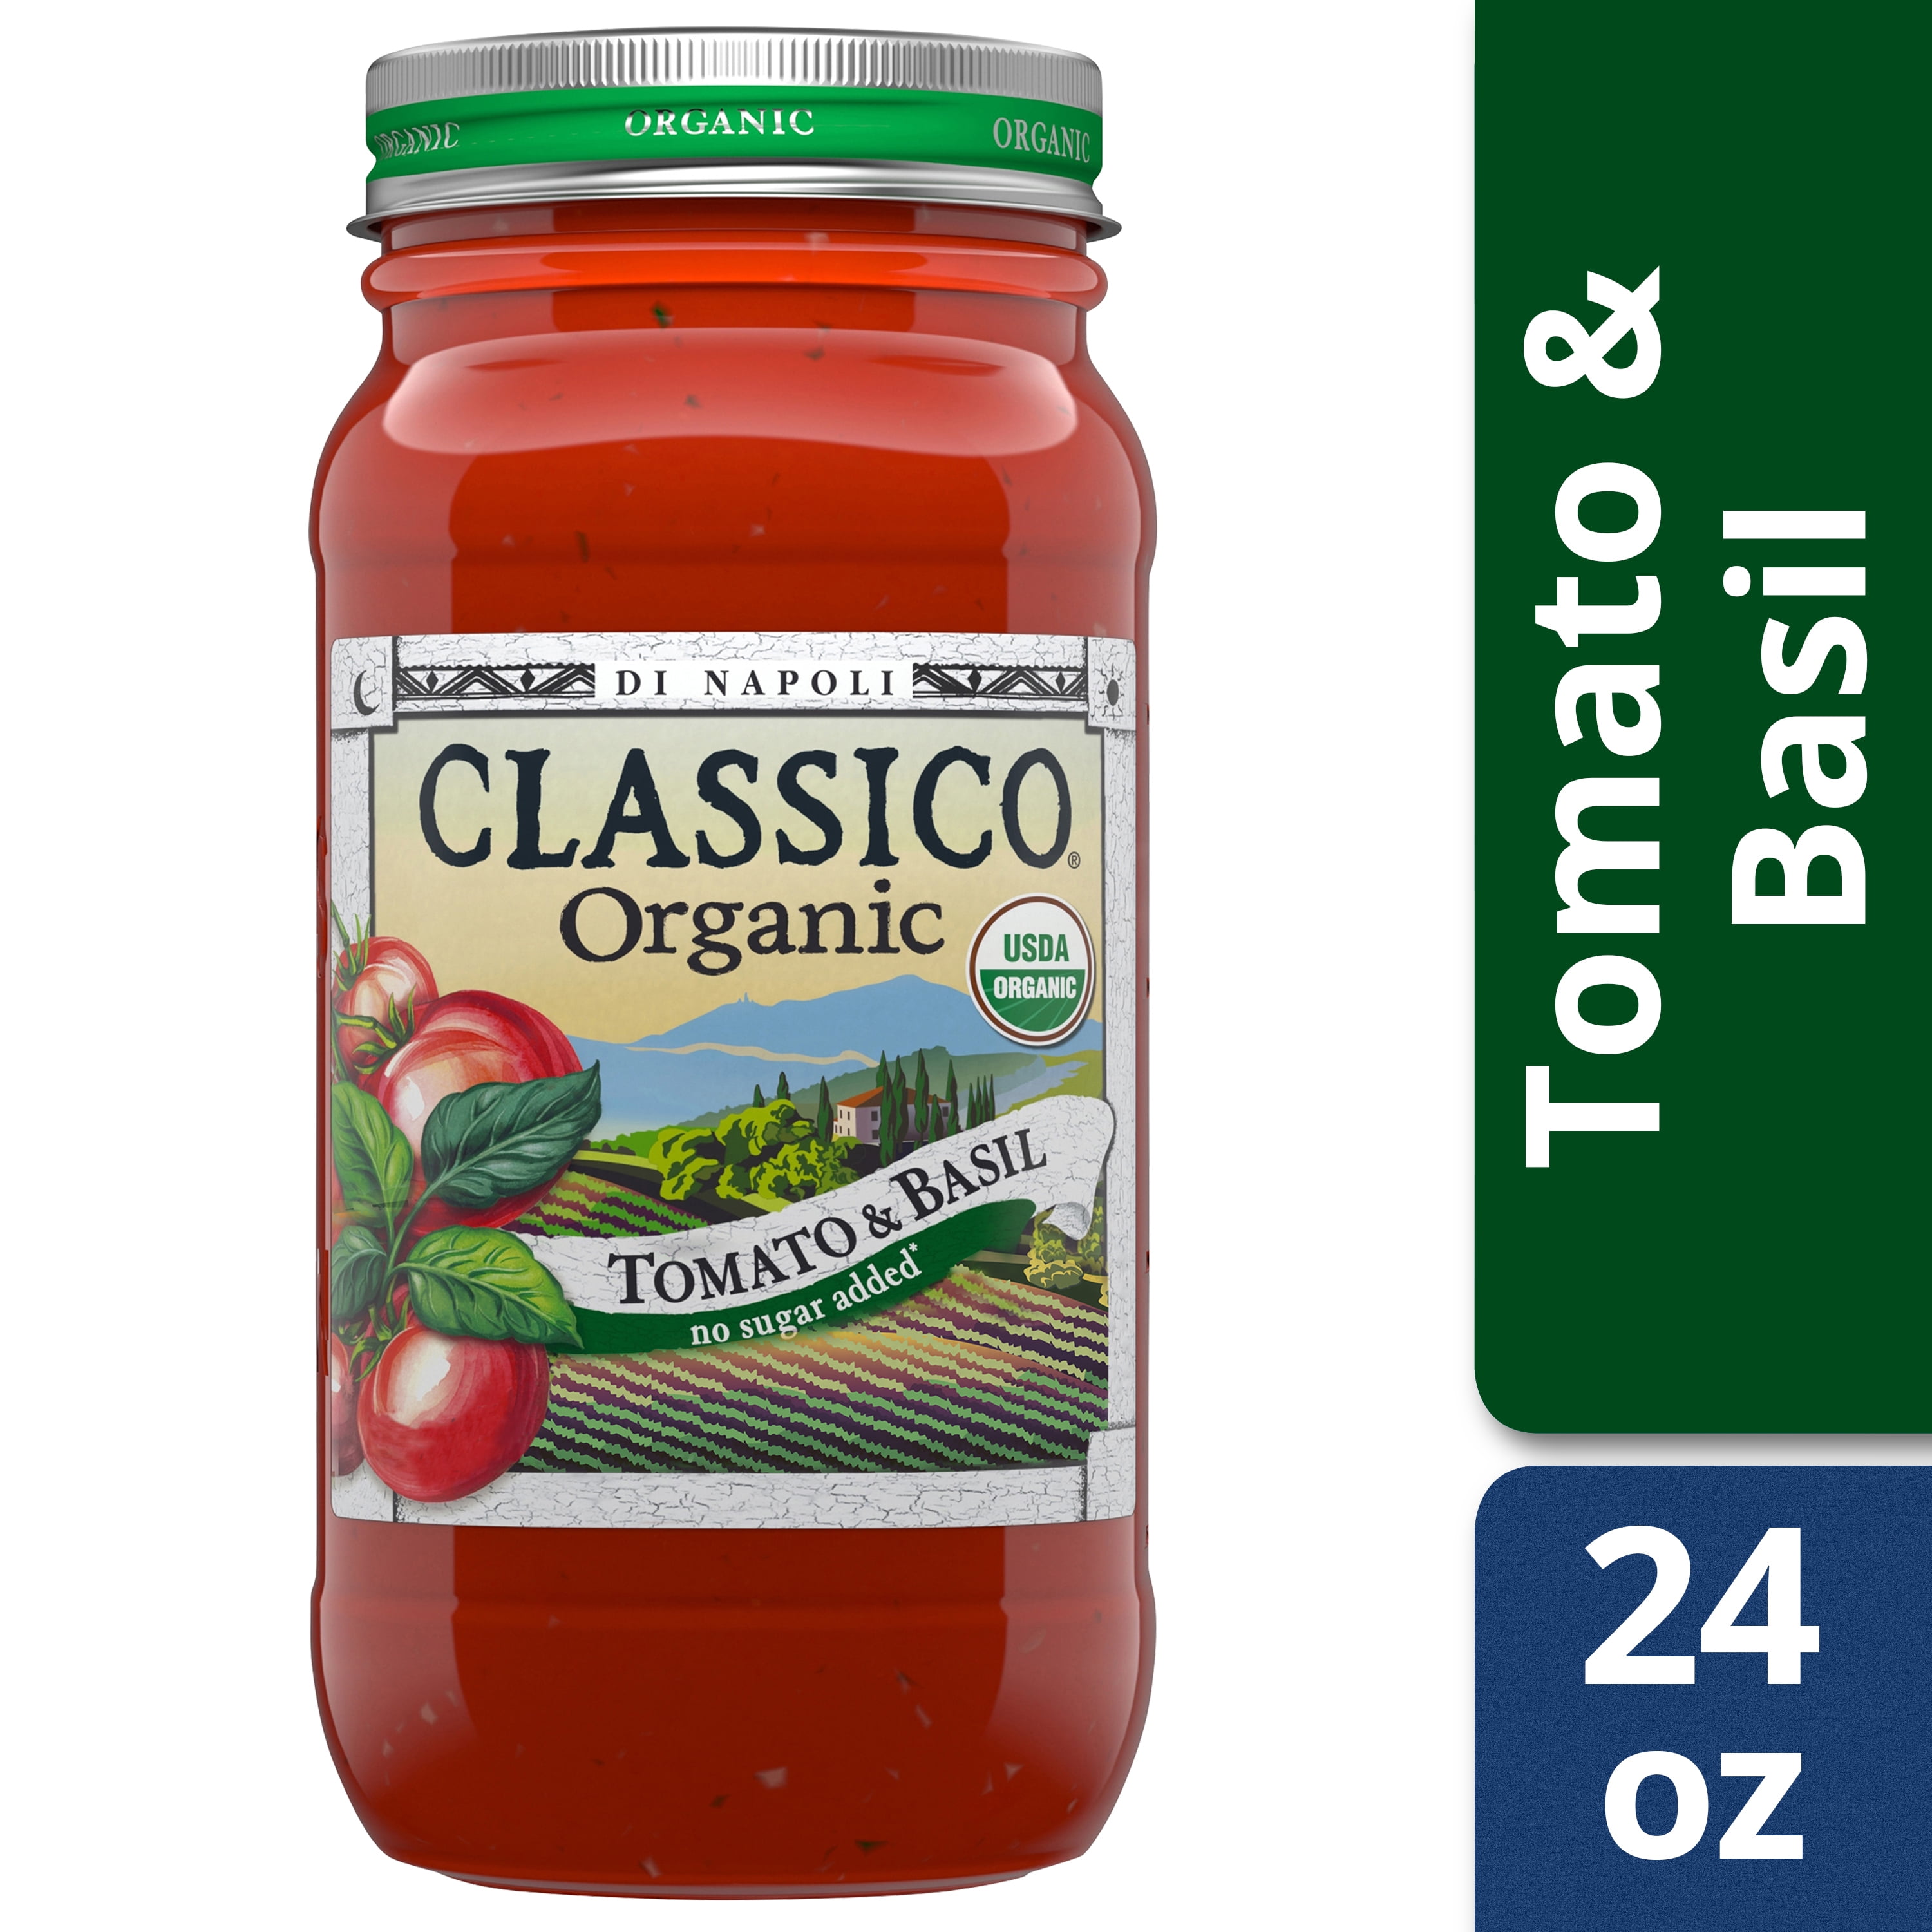 Classico Di Napoli Organic Tomato and Basil Pasta Sauce, 24 oz Jar ...